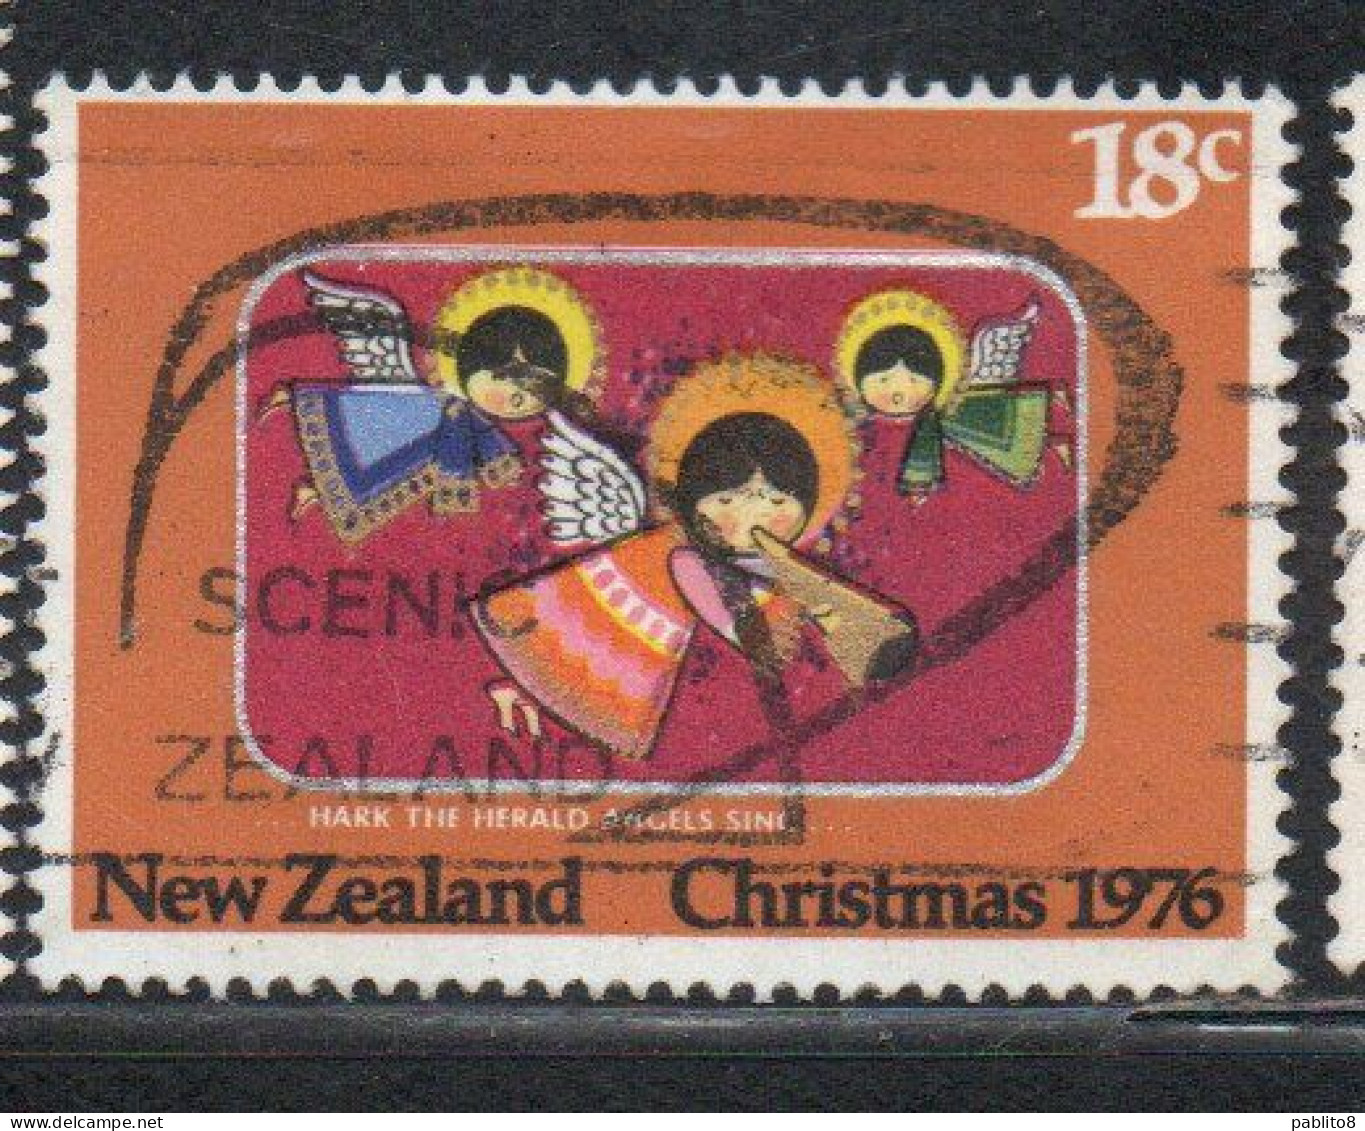 NEW ZEALAND NUOVA ZELANDA 1976 HARK THE HERALD ANGELS SING CHRISTMAS NATALE NOEL WEIHNACHTEN NAVIDAD 18c USED - Gebraucht